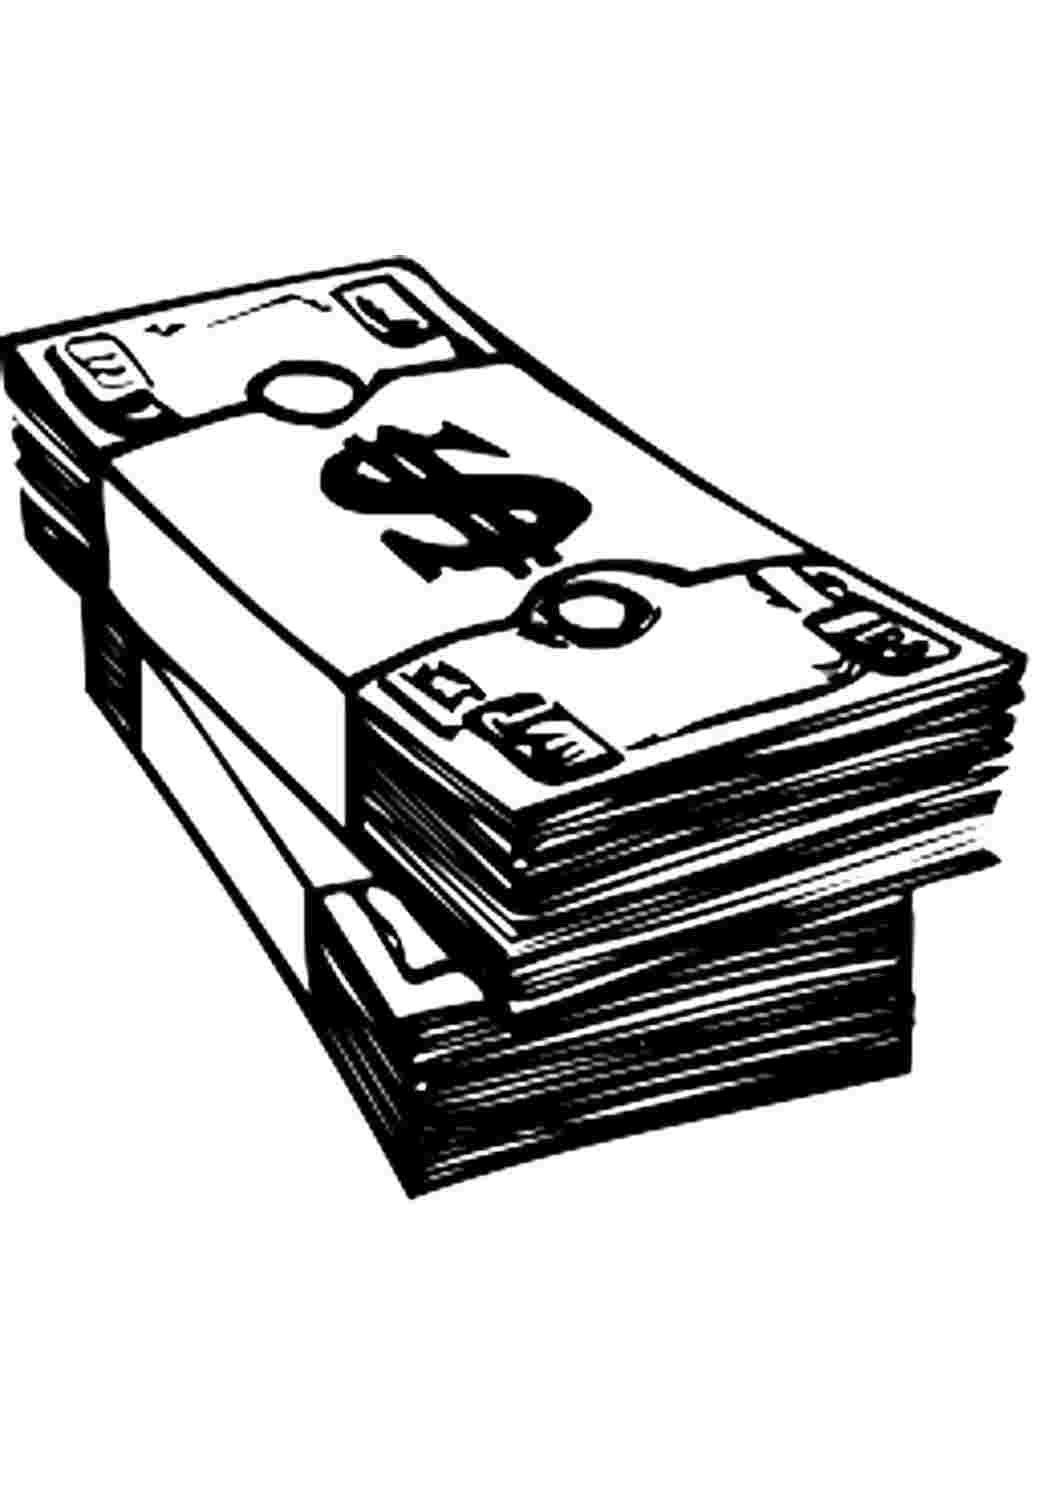 Идеи для срисовки денег бумажных (88 фото) » идеи рисунков для срисовки и  картинки в стиле арт - АРТ.КАРТИНКОФ.КЛАБ